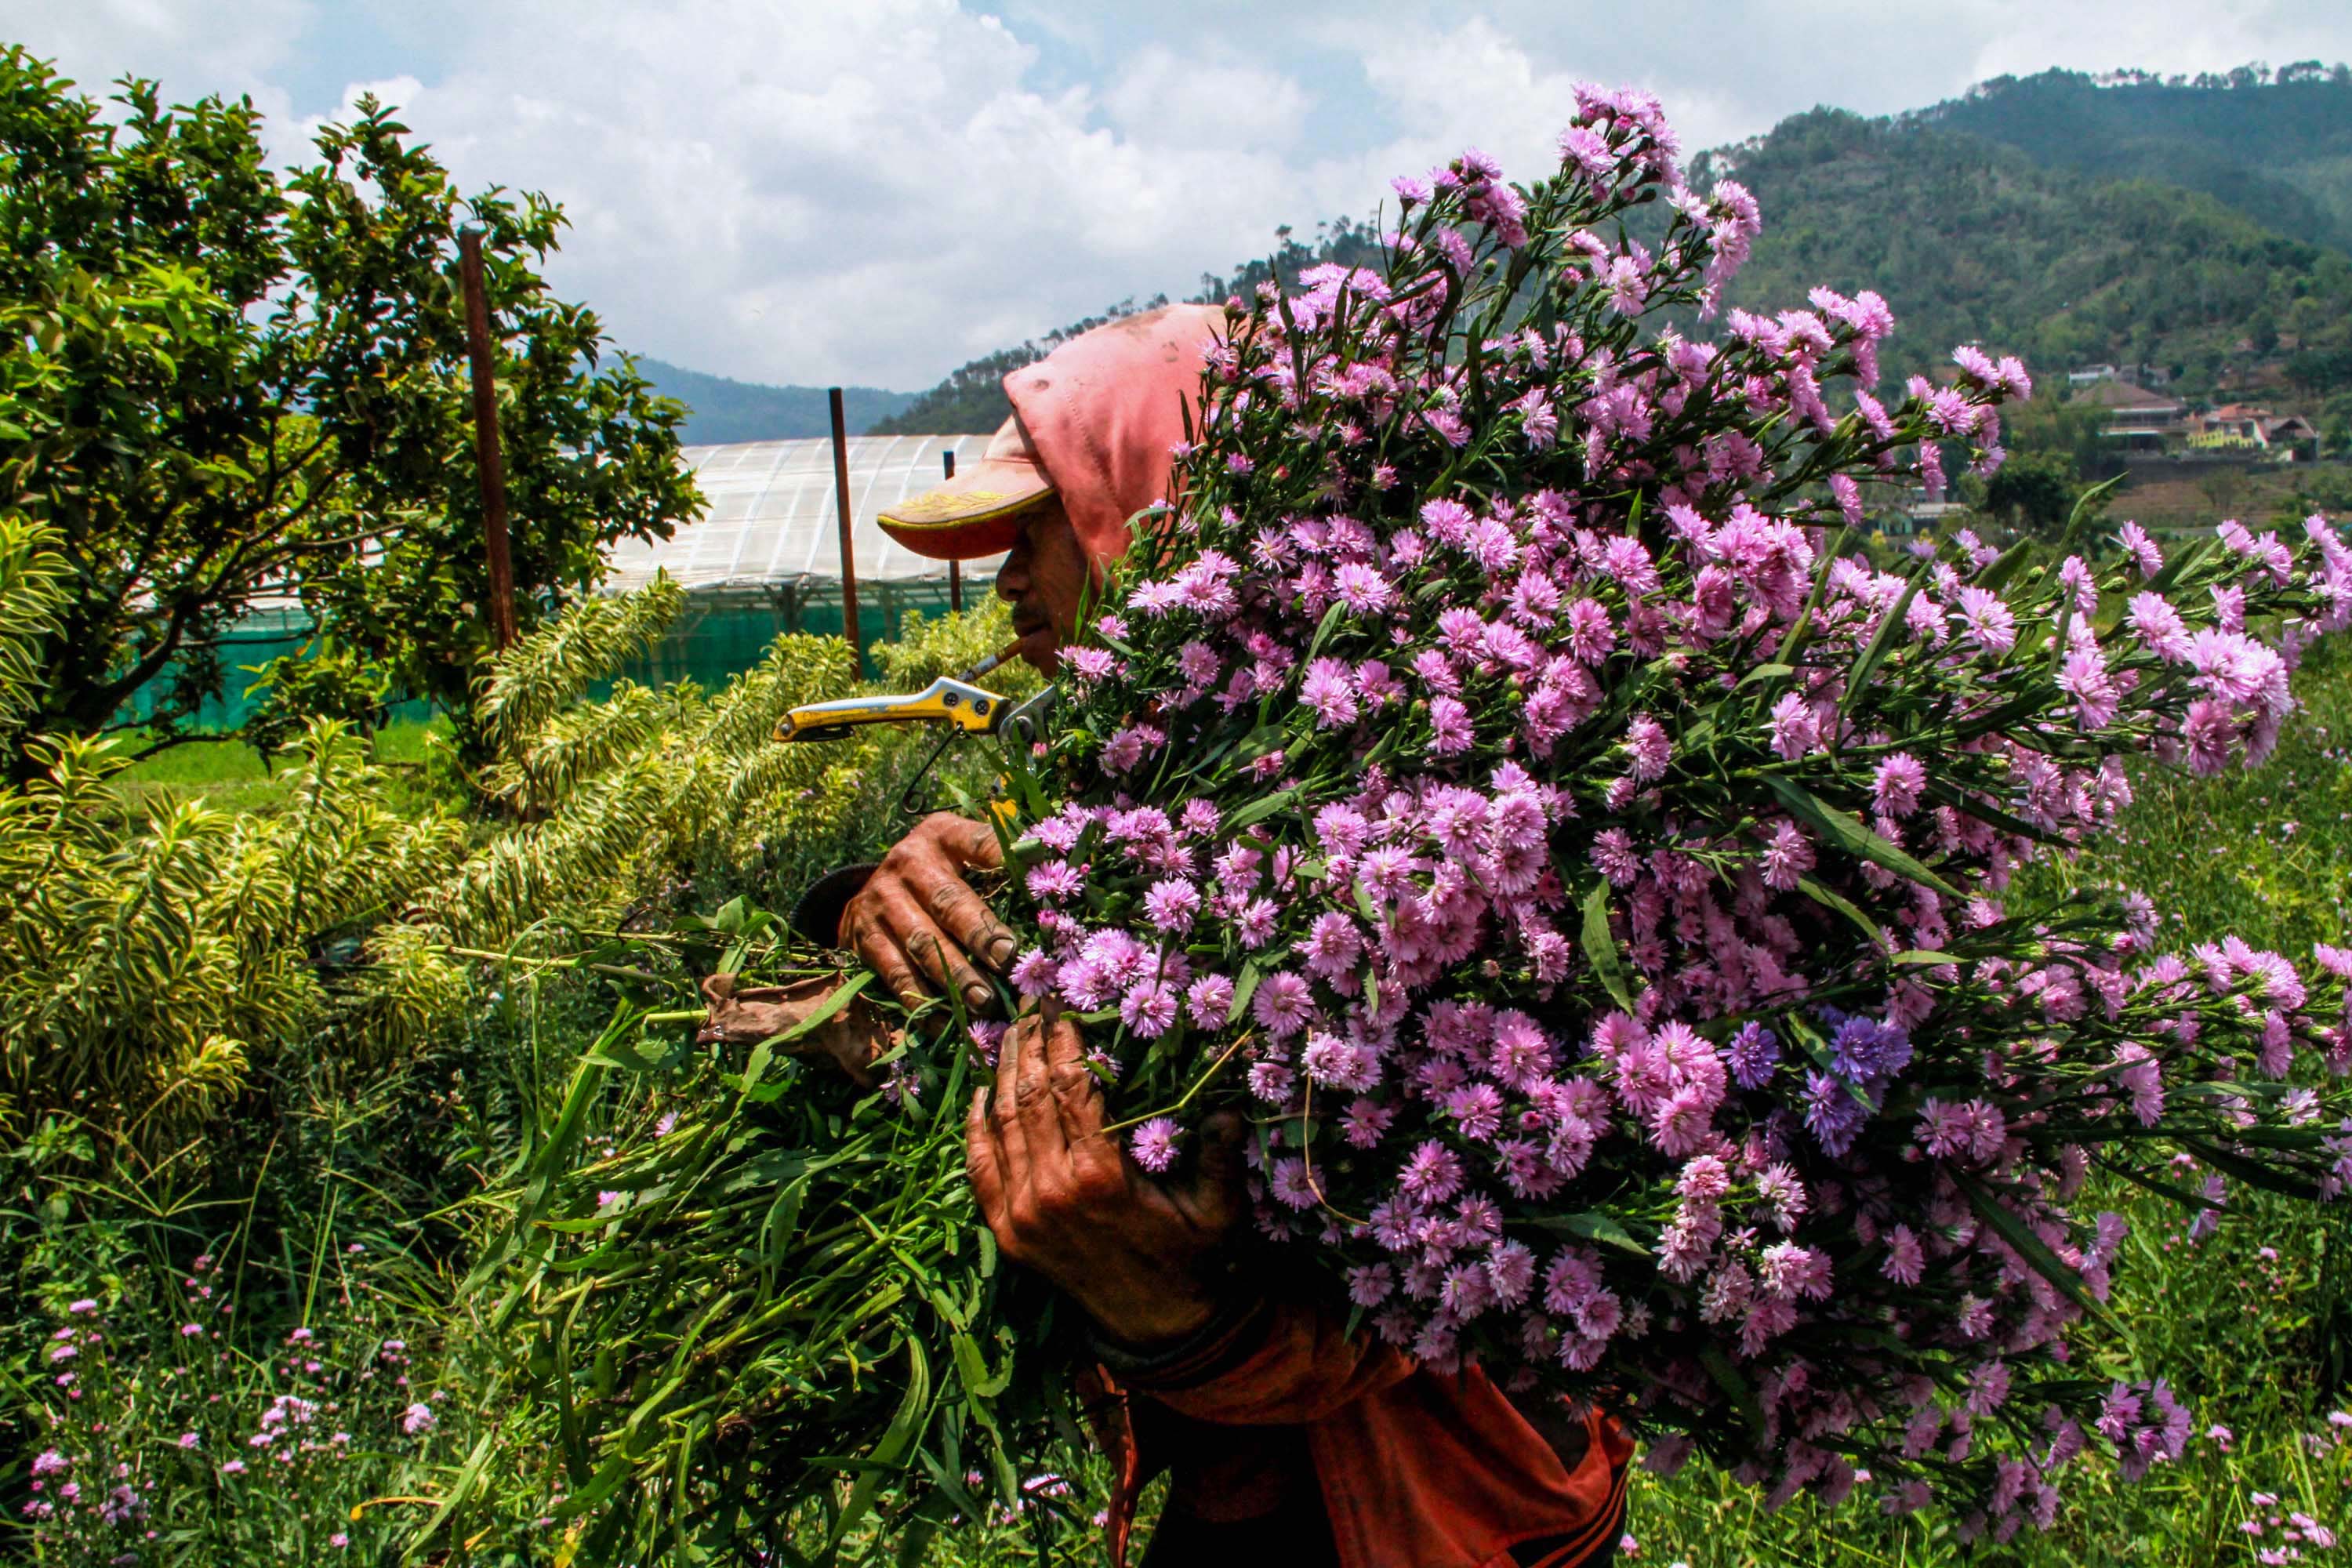  Petani membawa bunga pikok untuk dirapikan kemudian diantarkan ke pengepul. Pada bulan-bulan tertentu permintaan bunga pikok menurun. Foto : Falahi Mubarok/Mongabay Indonesia 